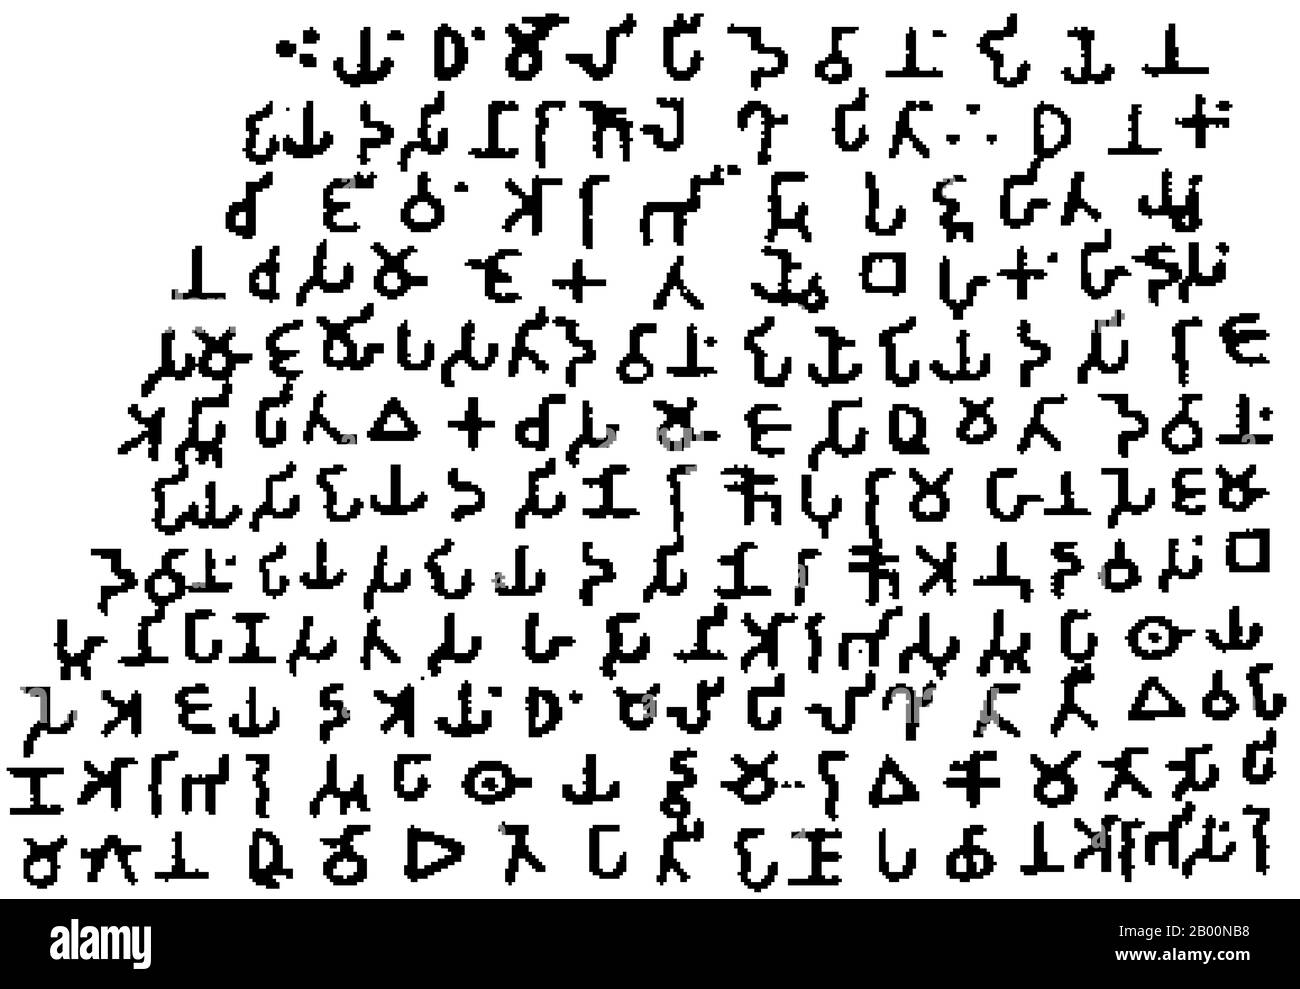 Inde: Script Brahmi. L'édit de roche d'Ashoka à Girnar, 3e siècle BCE. Brāhmī est le nom moderne donné aux plus anciens membres de la famille de scripts Brahmic. Les inscriptions les plus connues de Brāhmī sont les édits de coupe rock d'Ashoka dans le centre-nord de l'Inde, datant du 3ème siècle avant notre ère. Ces derniers sont traditionnellement considérés comme les premiers exemples connus d'écriture Brāhmī, bien que des découvertes récentes suggèrent que Brāhmī peut être un peu plus vieux. Le script a été déchiffré en 1837 par James Prinsep, archéologue, philologue et officiel de la British East India Company. Banque D'Images